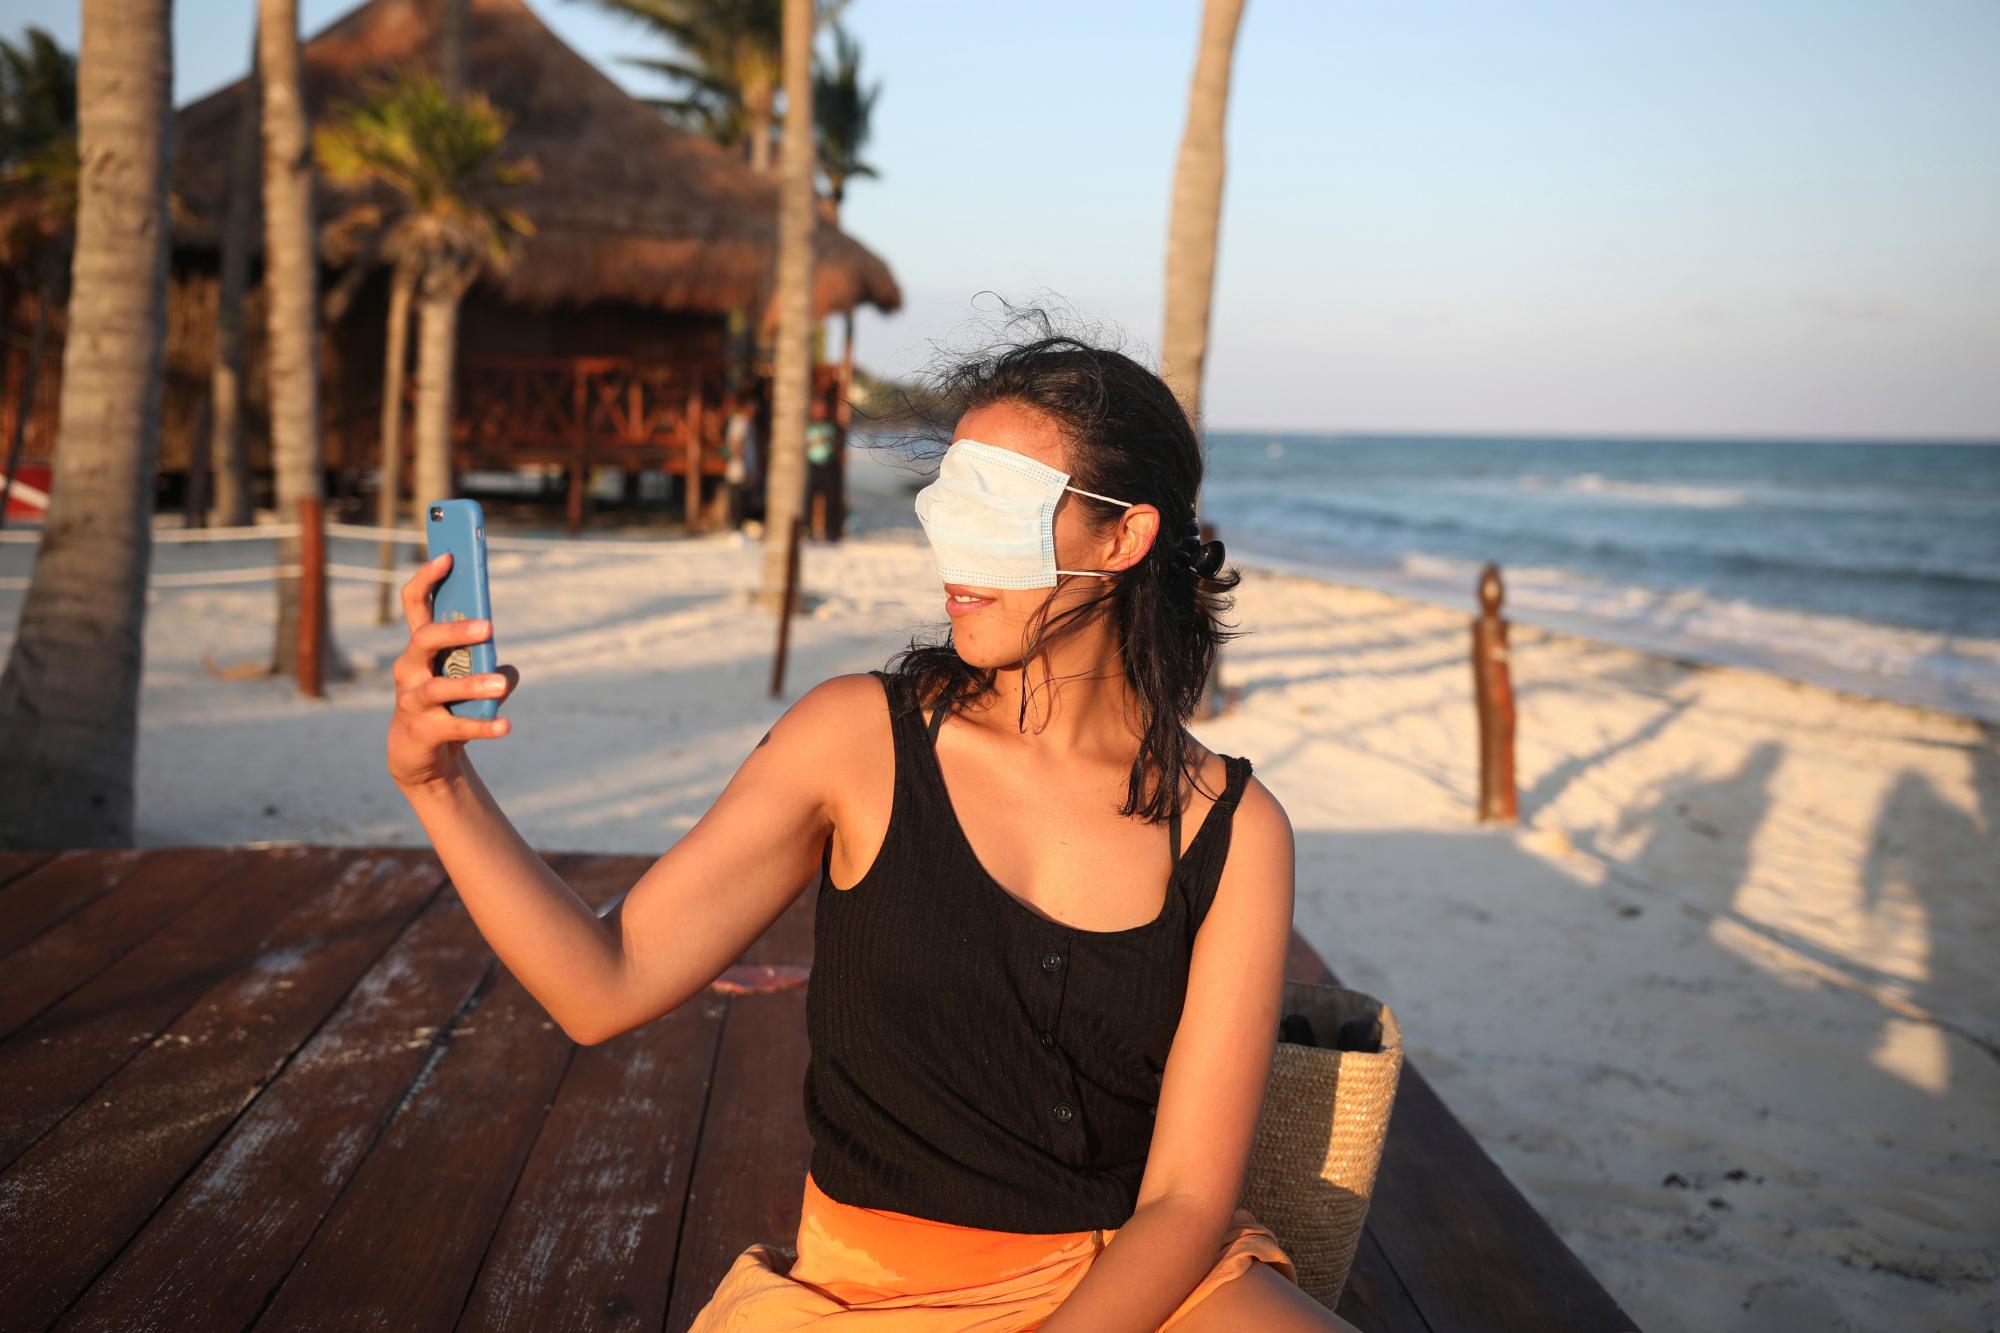 Romina Montoya, residente en la Ciudad de México, se toma una selfie graciosa con una mascarilla sobre los ojos y la nariz, en Playa del Carmen, en el estado de Quintana Roo, México, el 6 de enero de 2021. Aumenta la preocupación porque el éxito de la crucial campaña turística invernal pueda ser efímero por el aumento de los casos de COVID-19 tanto en México como en Estados Unidos. 